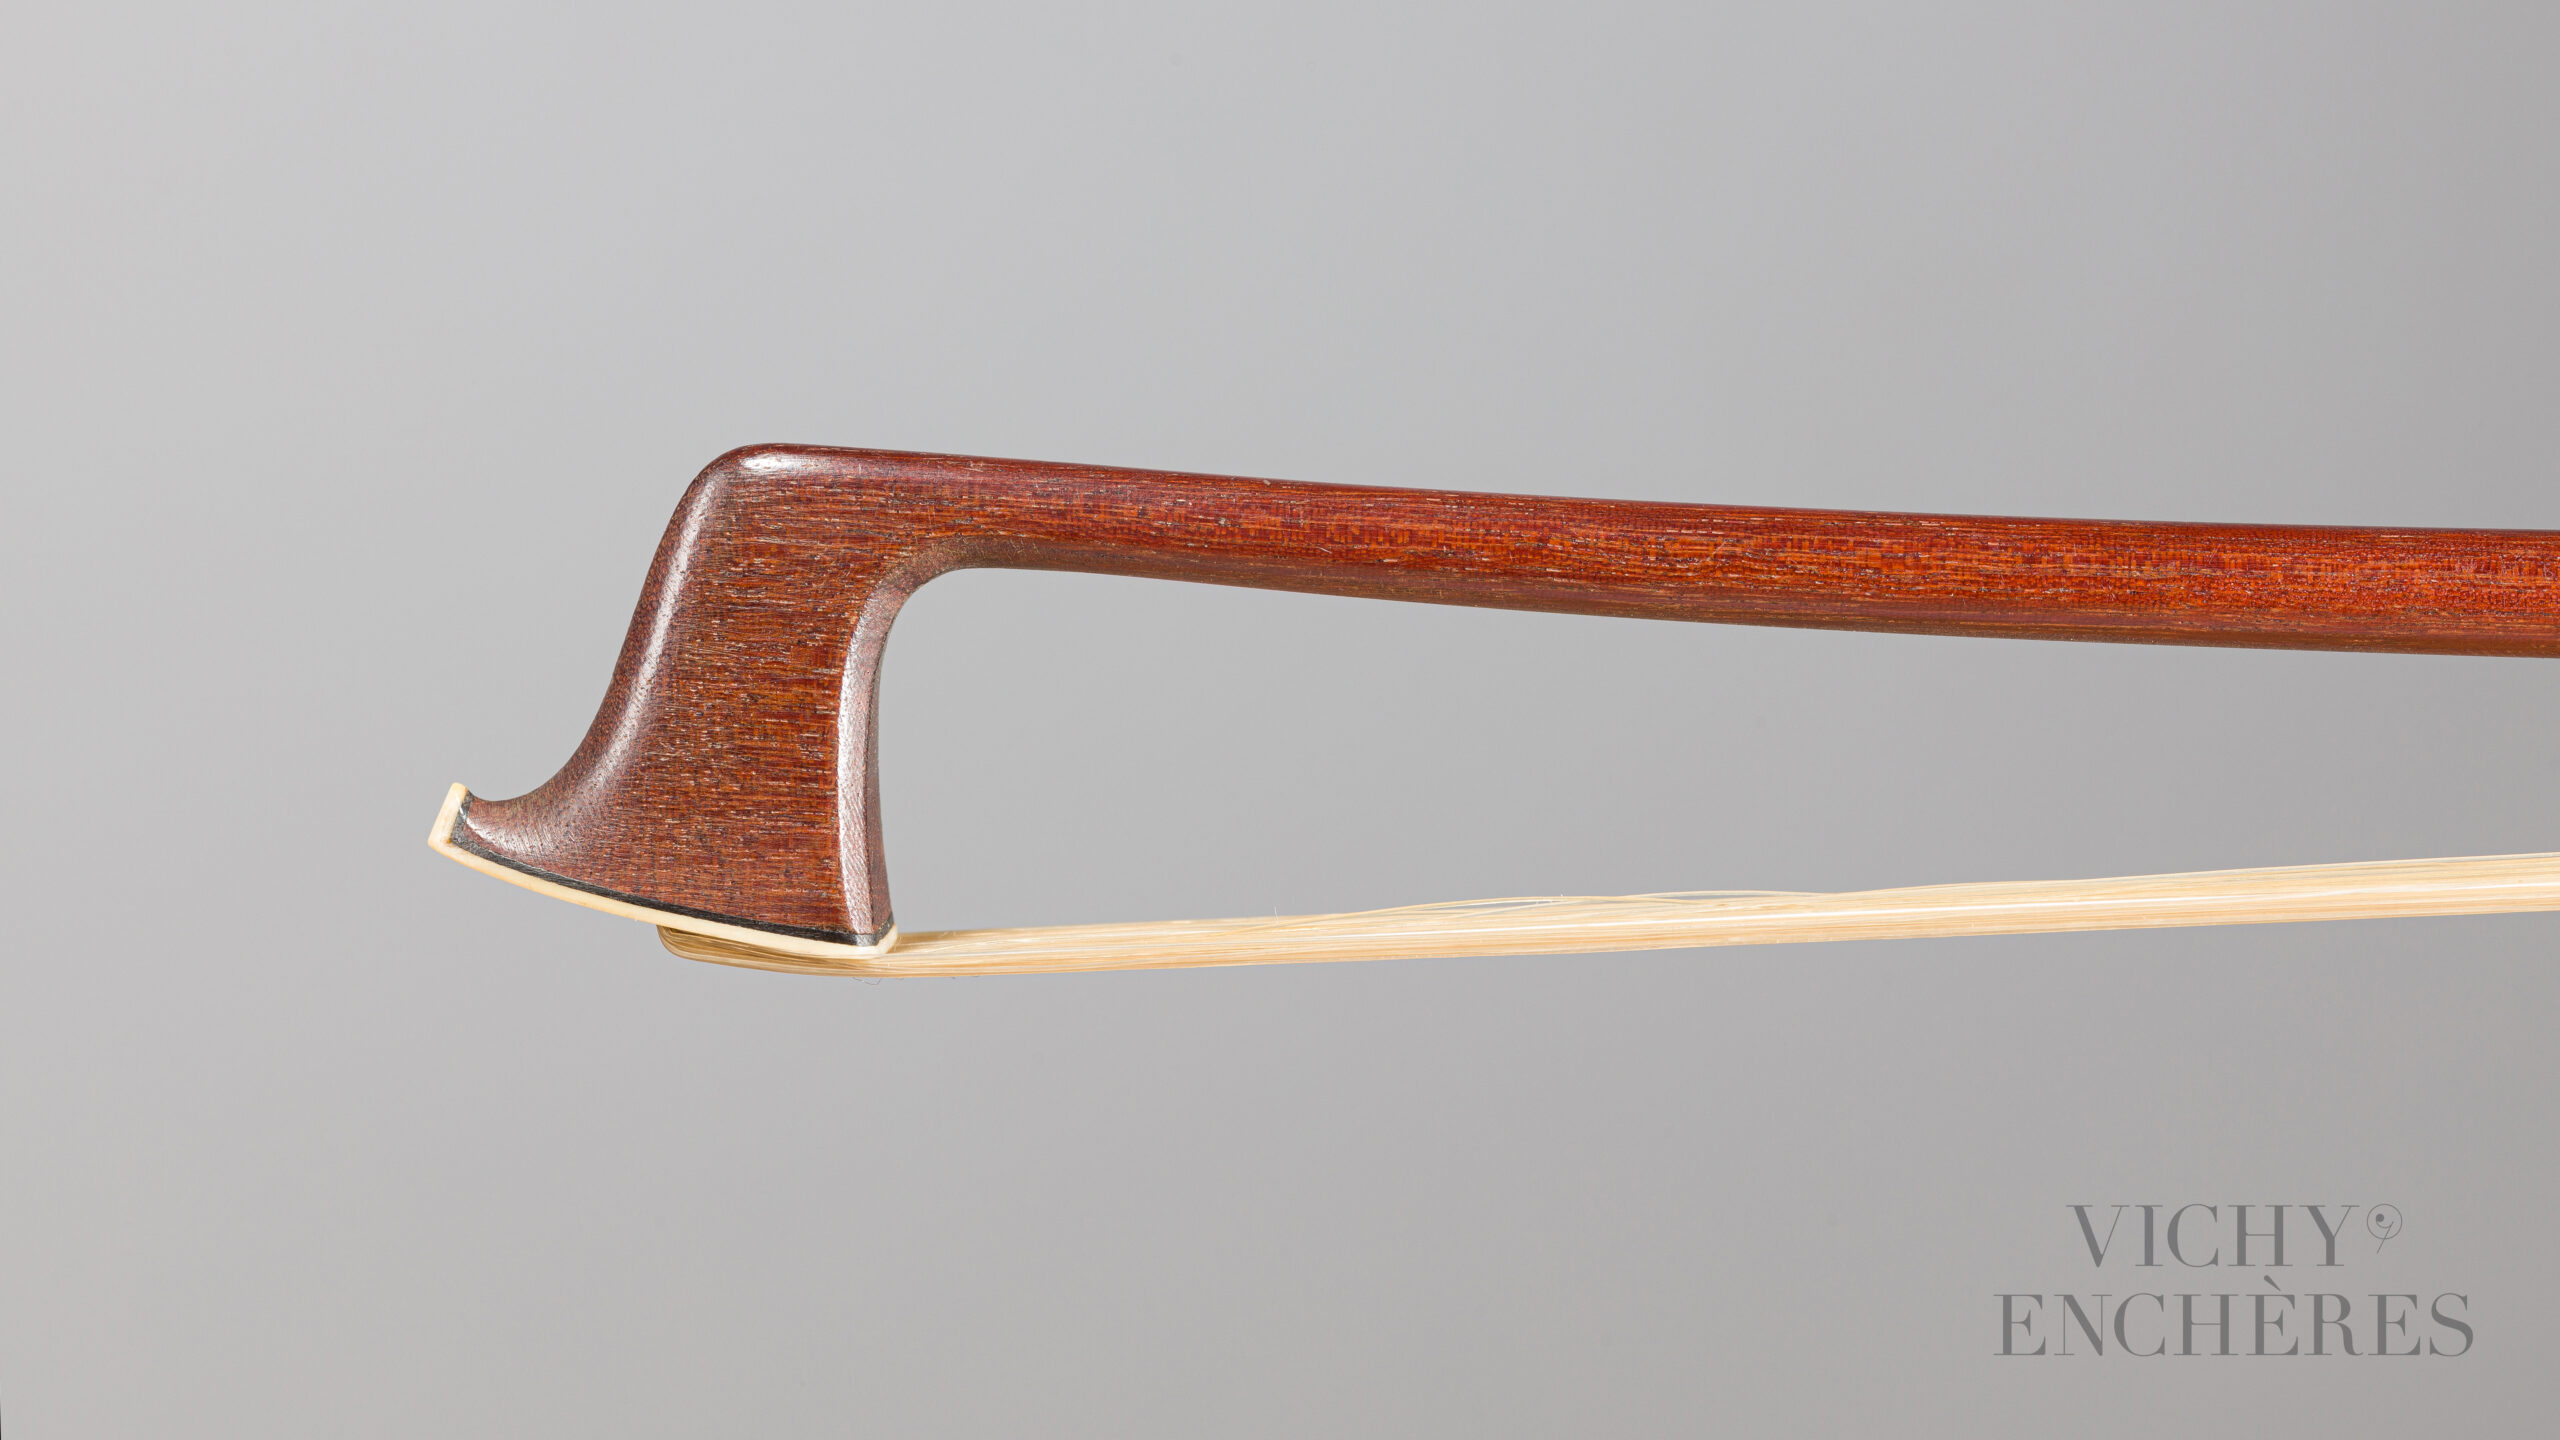 Archet de violon de Jean Joseph MARTIN Collection Jean Petitcolas Instrument mis en vente par Vichy Enchères le 1er décembre 2022 © C. Darbelet